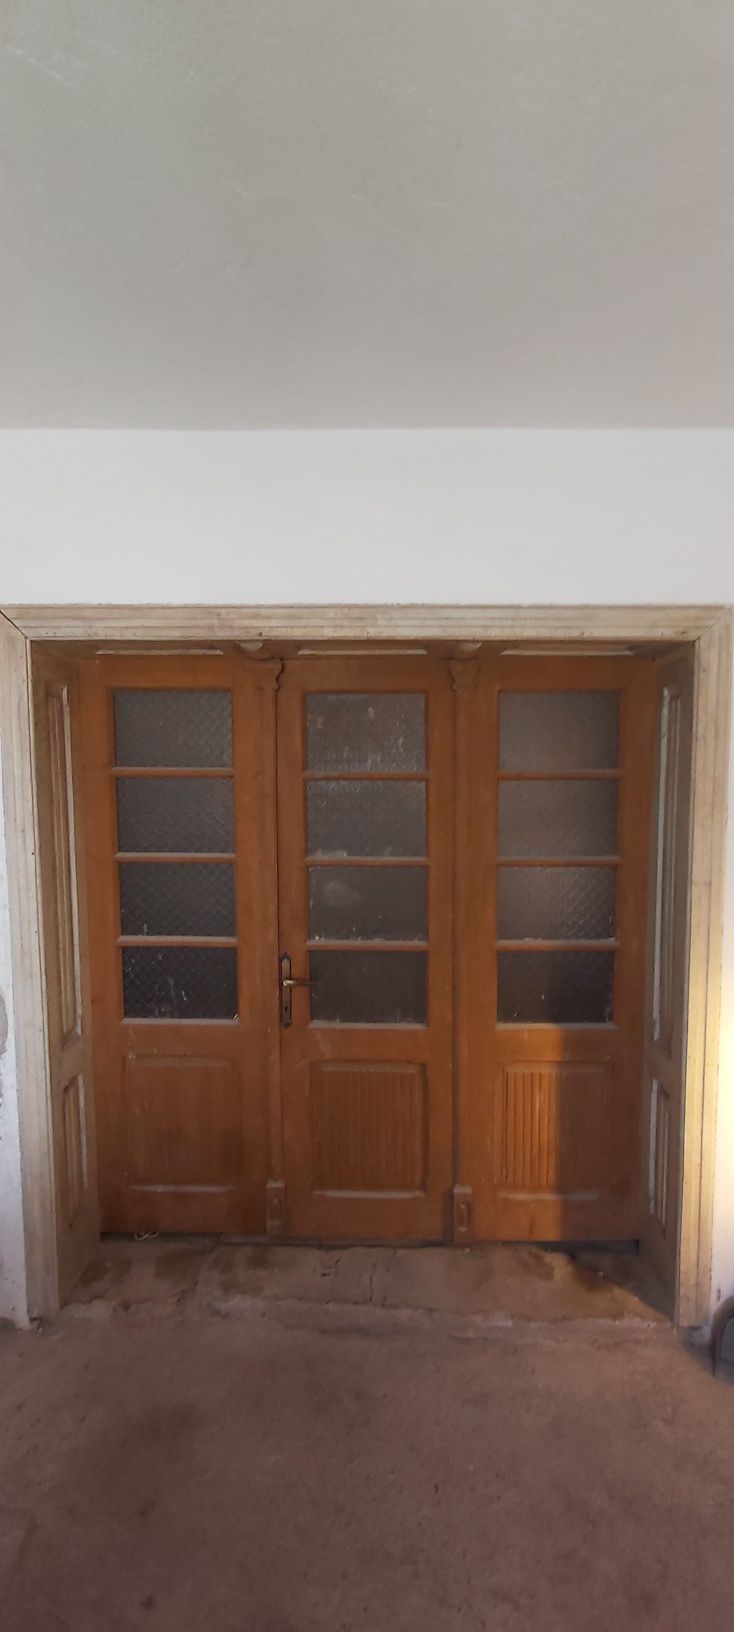 Vand glasvant interior cu 3 uși pt sufragerie